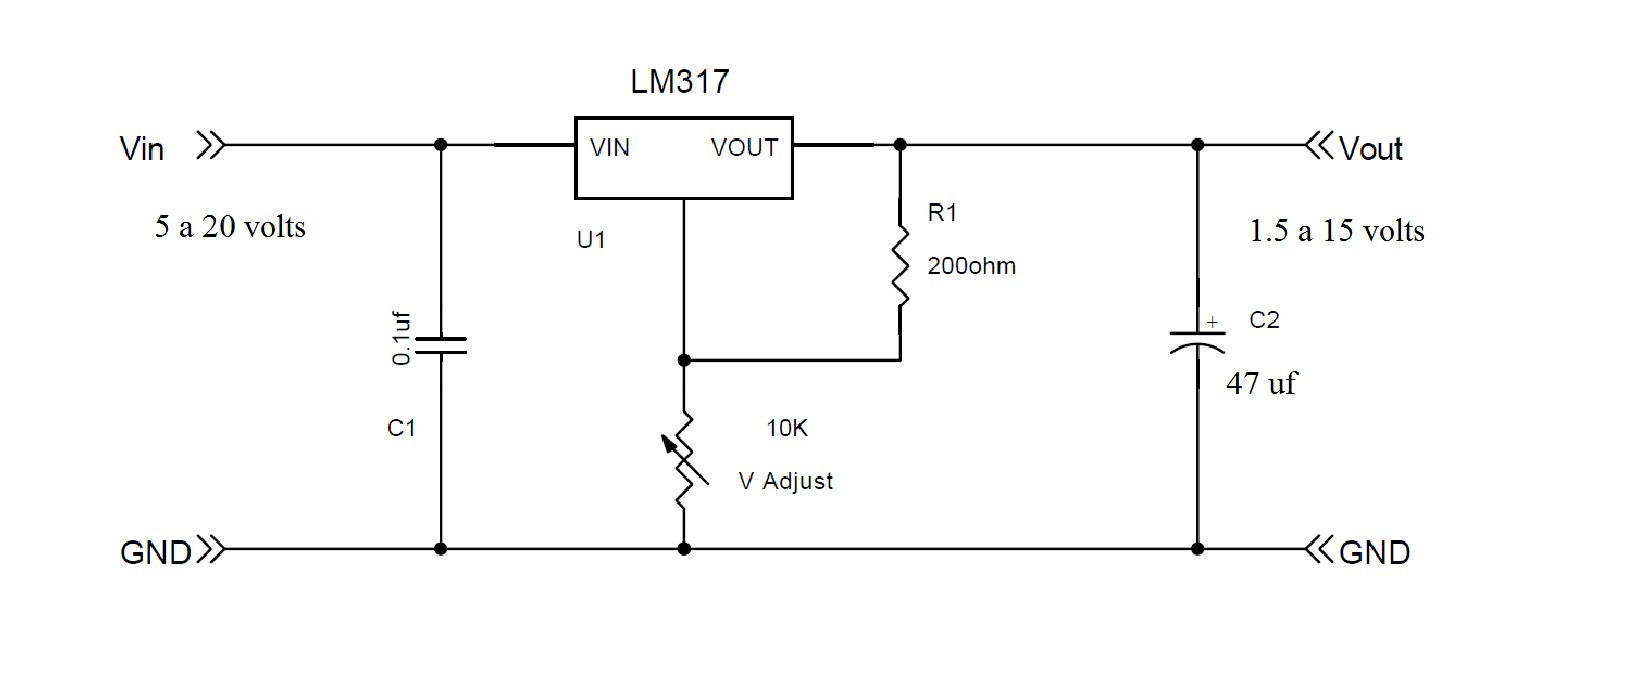 Стабилизатор 5 вольт схема. Стабилизатор напряжения 1.5 вольт схема. Стабилизатор напряжения на 12 вольт на lm317 схема. Lm317 5a. Стабилизатор напряжения 3.3 вольта схема.